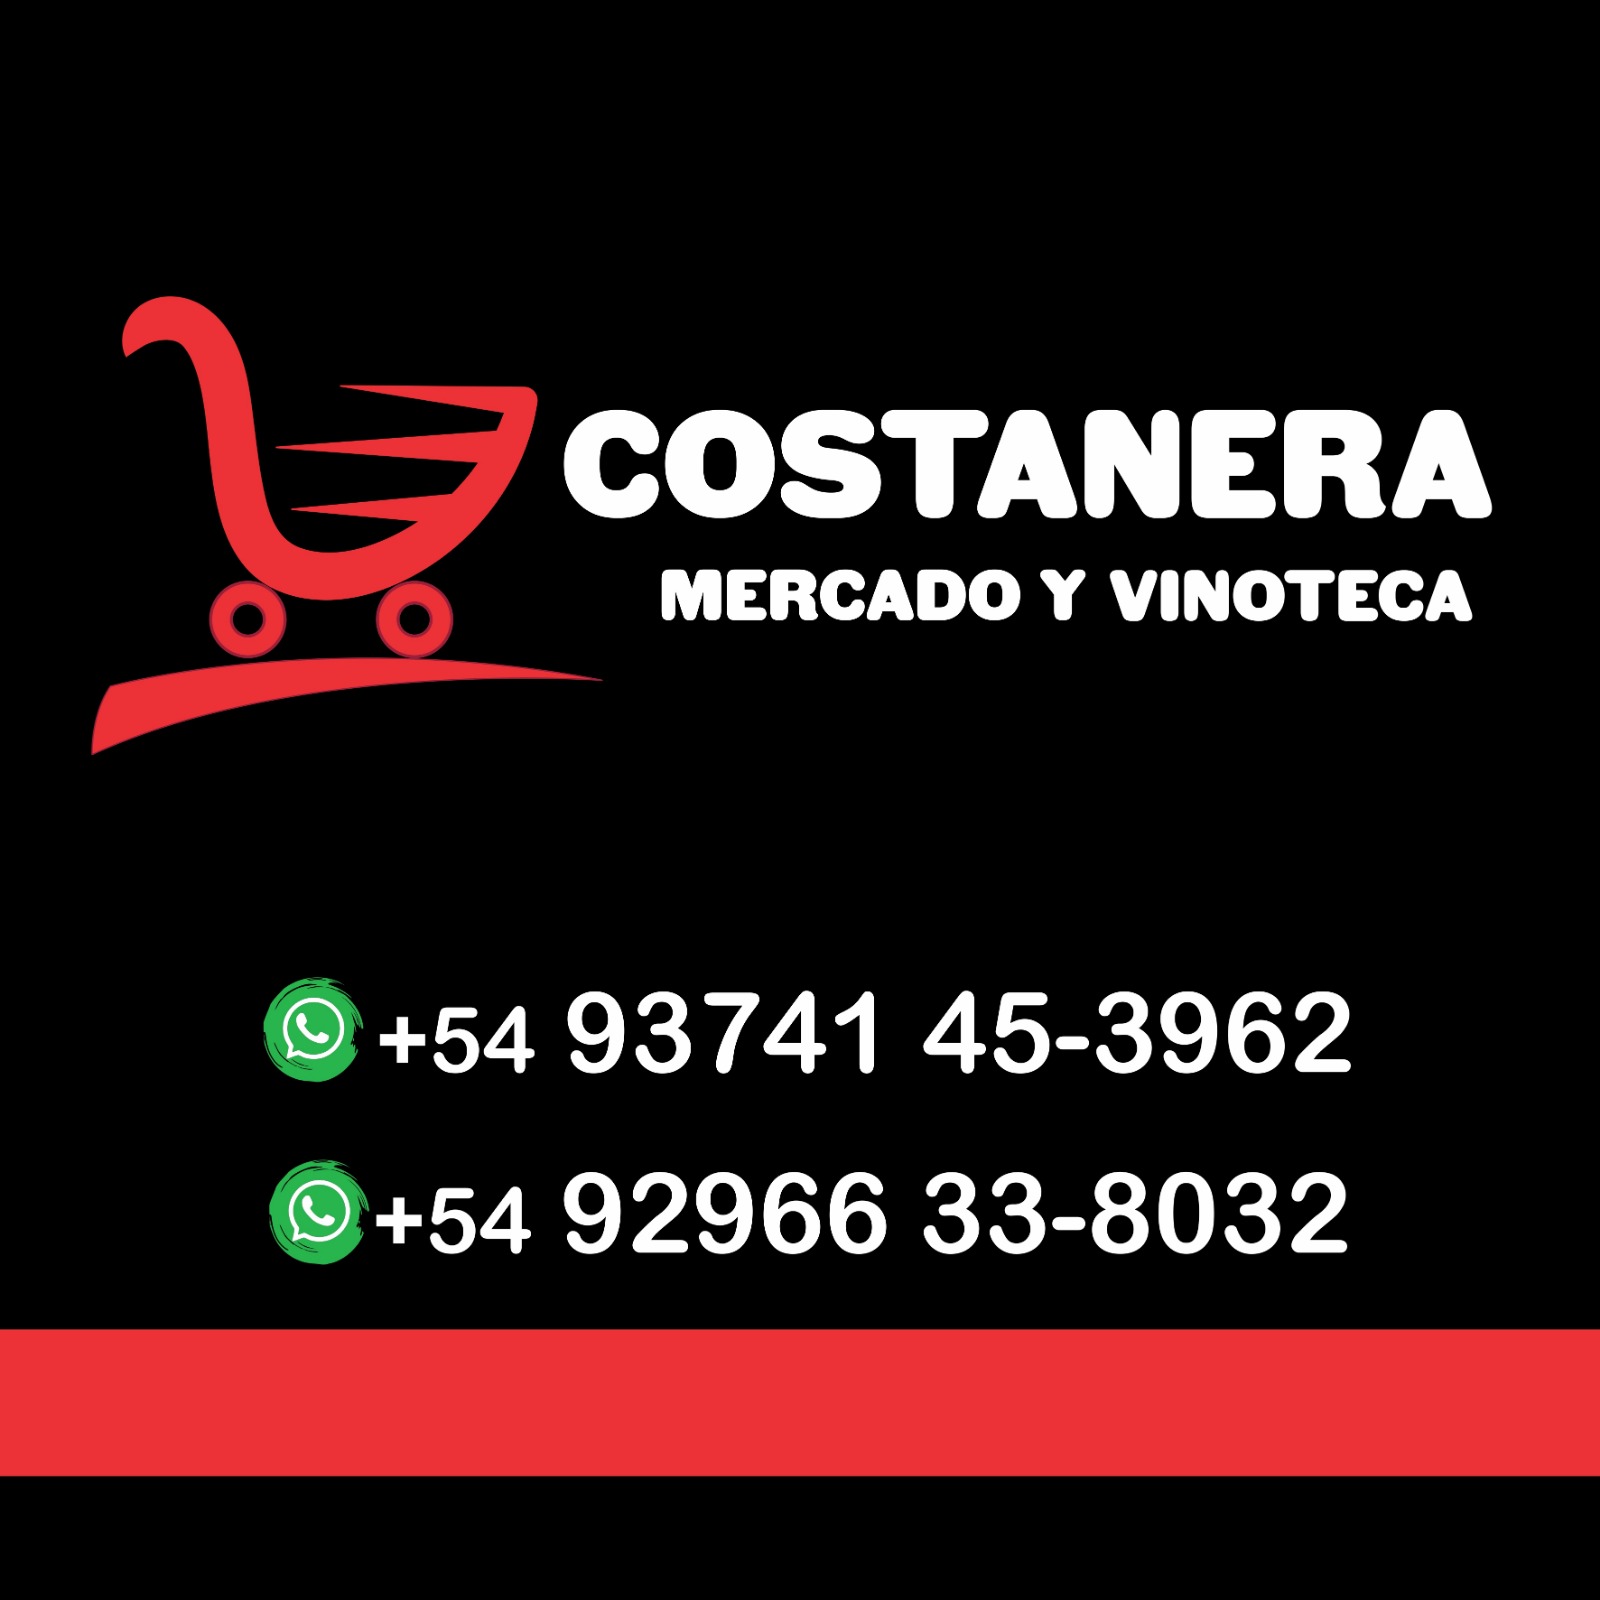 Costanera Mercado Y Vinoteca